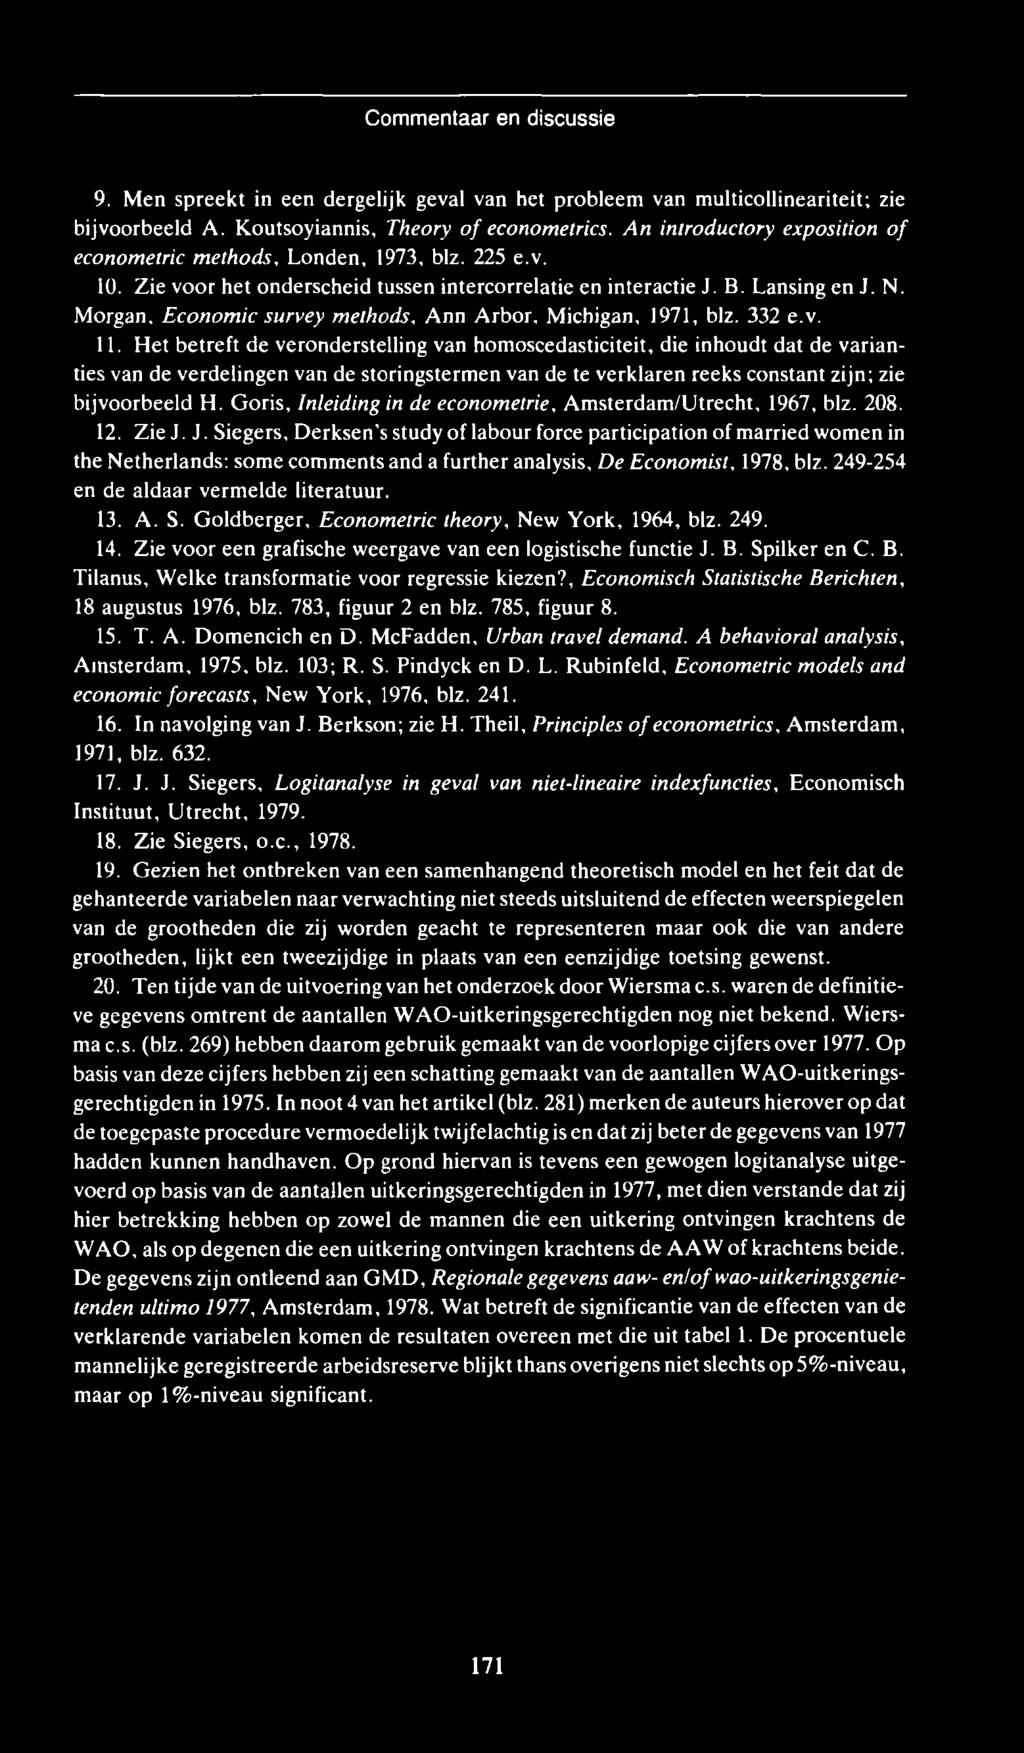 M organ, Econom ie survey m ethods, A nn A rbor, M ichigan, 1971, blz. 332 e.v. 11.